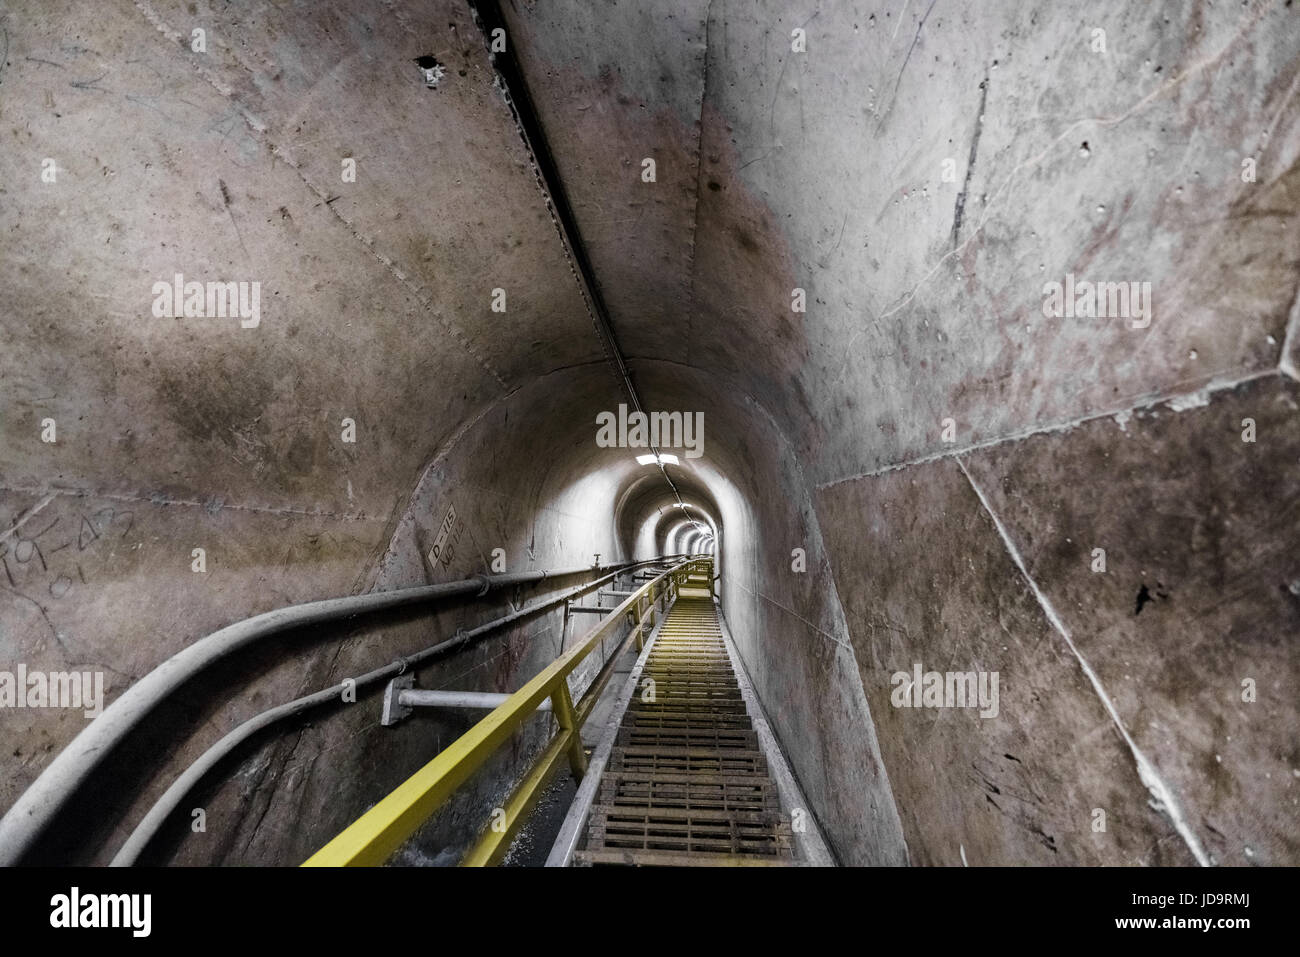 Vista de los pasos dentro del túnel de hormigón industrial vacío, disminuyendo la perspectiva. Foto de stock